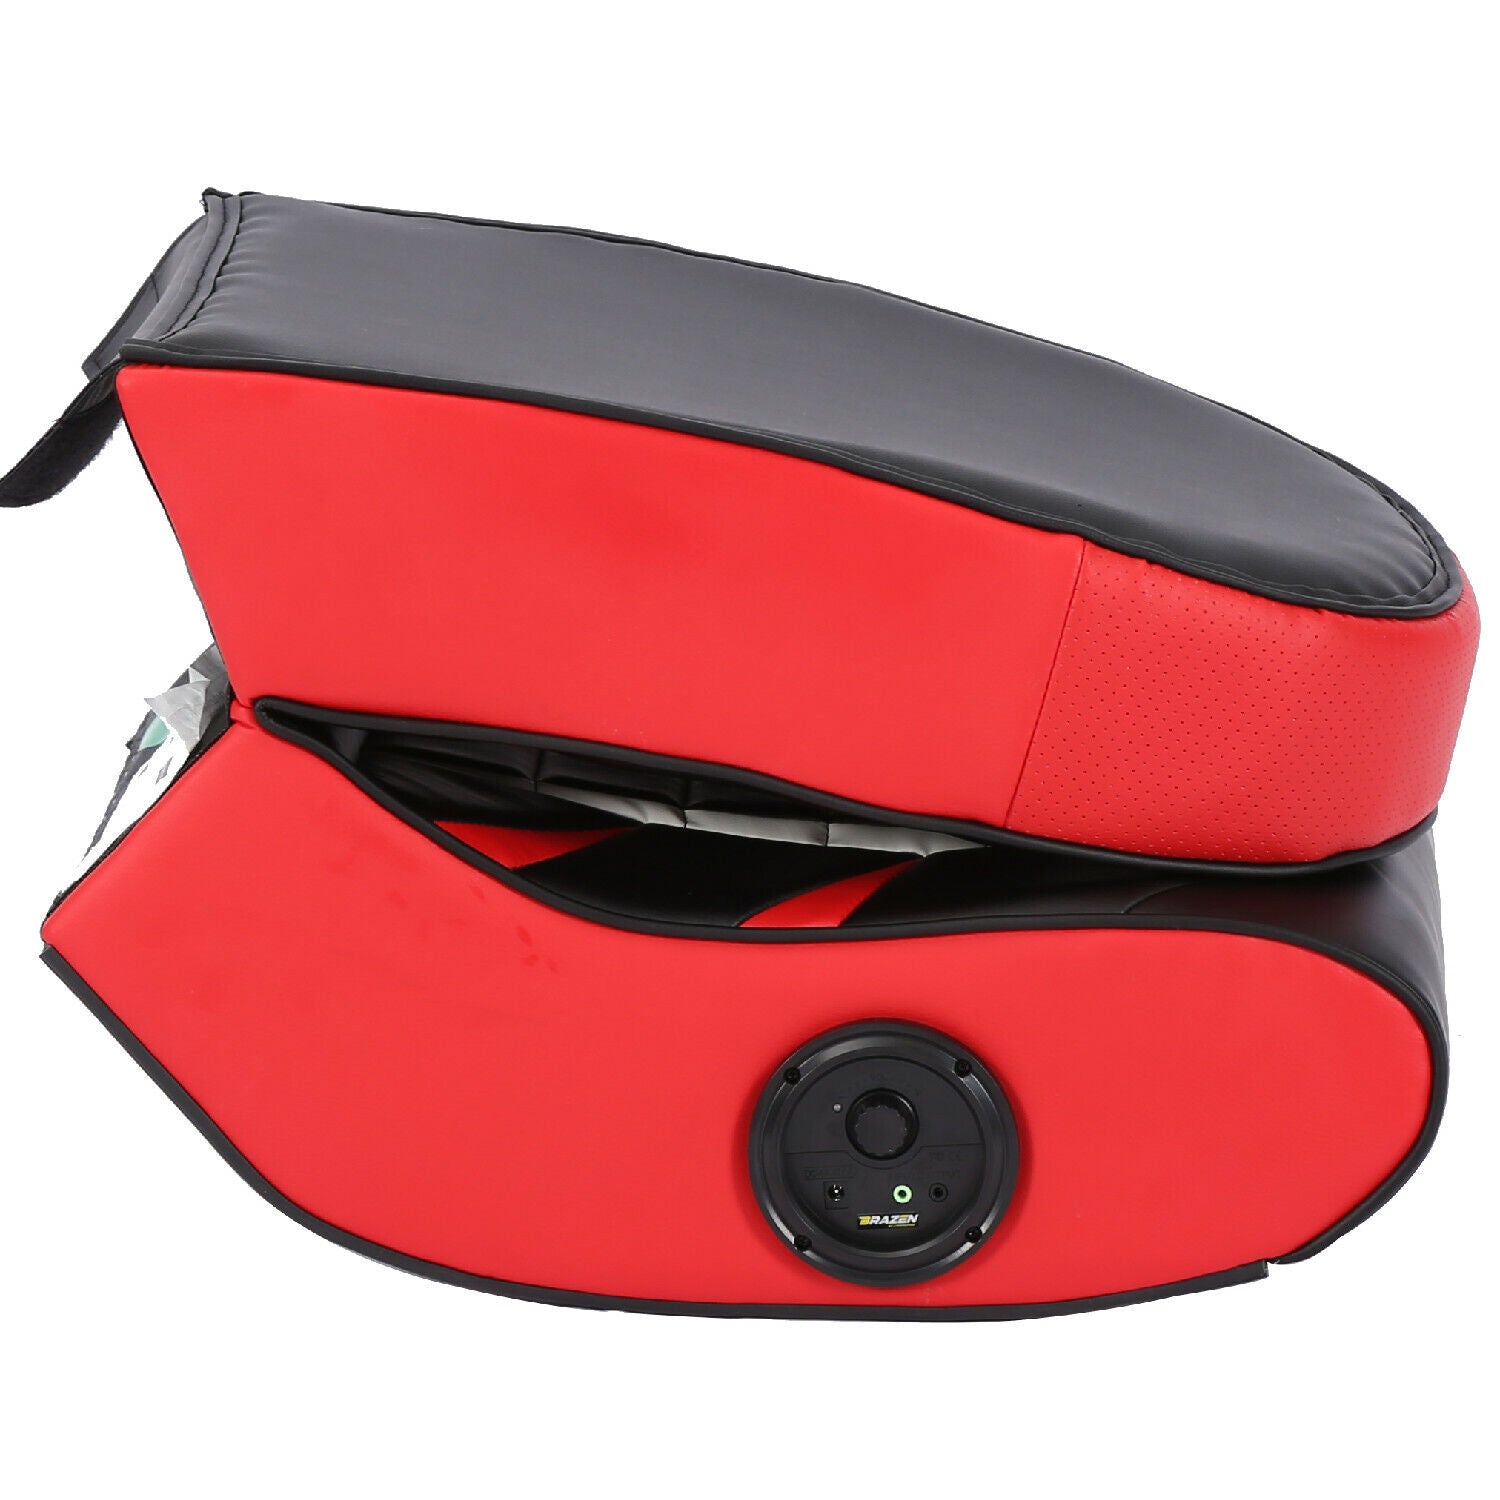 BraZen Python 2.0 Bluetooth Surround Sound Gaming Chair in Red/Black